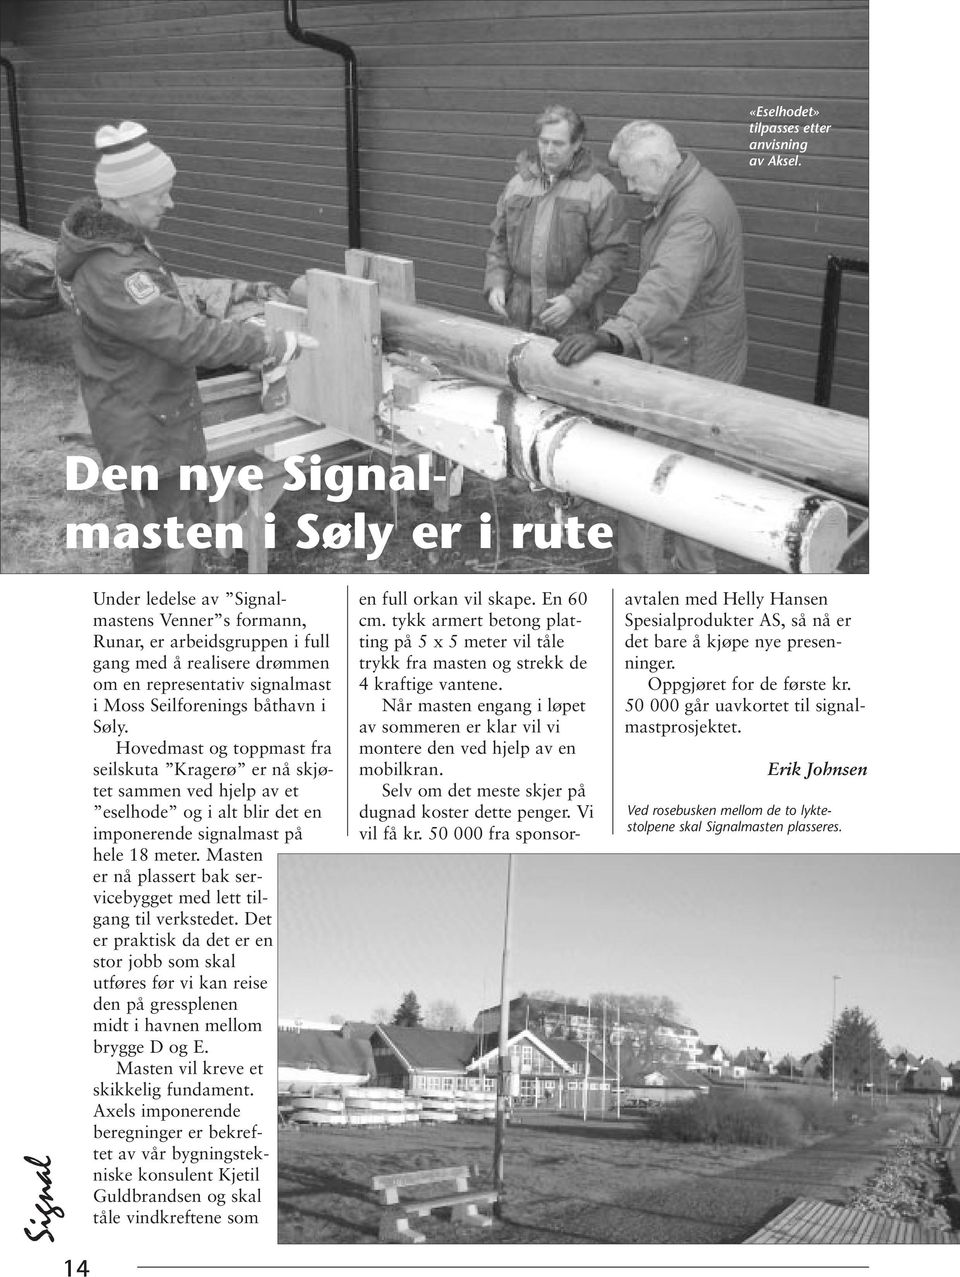 i Søly. Hovedmast og toppmast fra seilskuta Kragerø er nå skjøtet sammen ved hjelp av et eselhode og i alt blir det en imponerende signalmast på hele 18 meter.